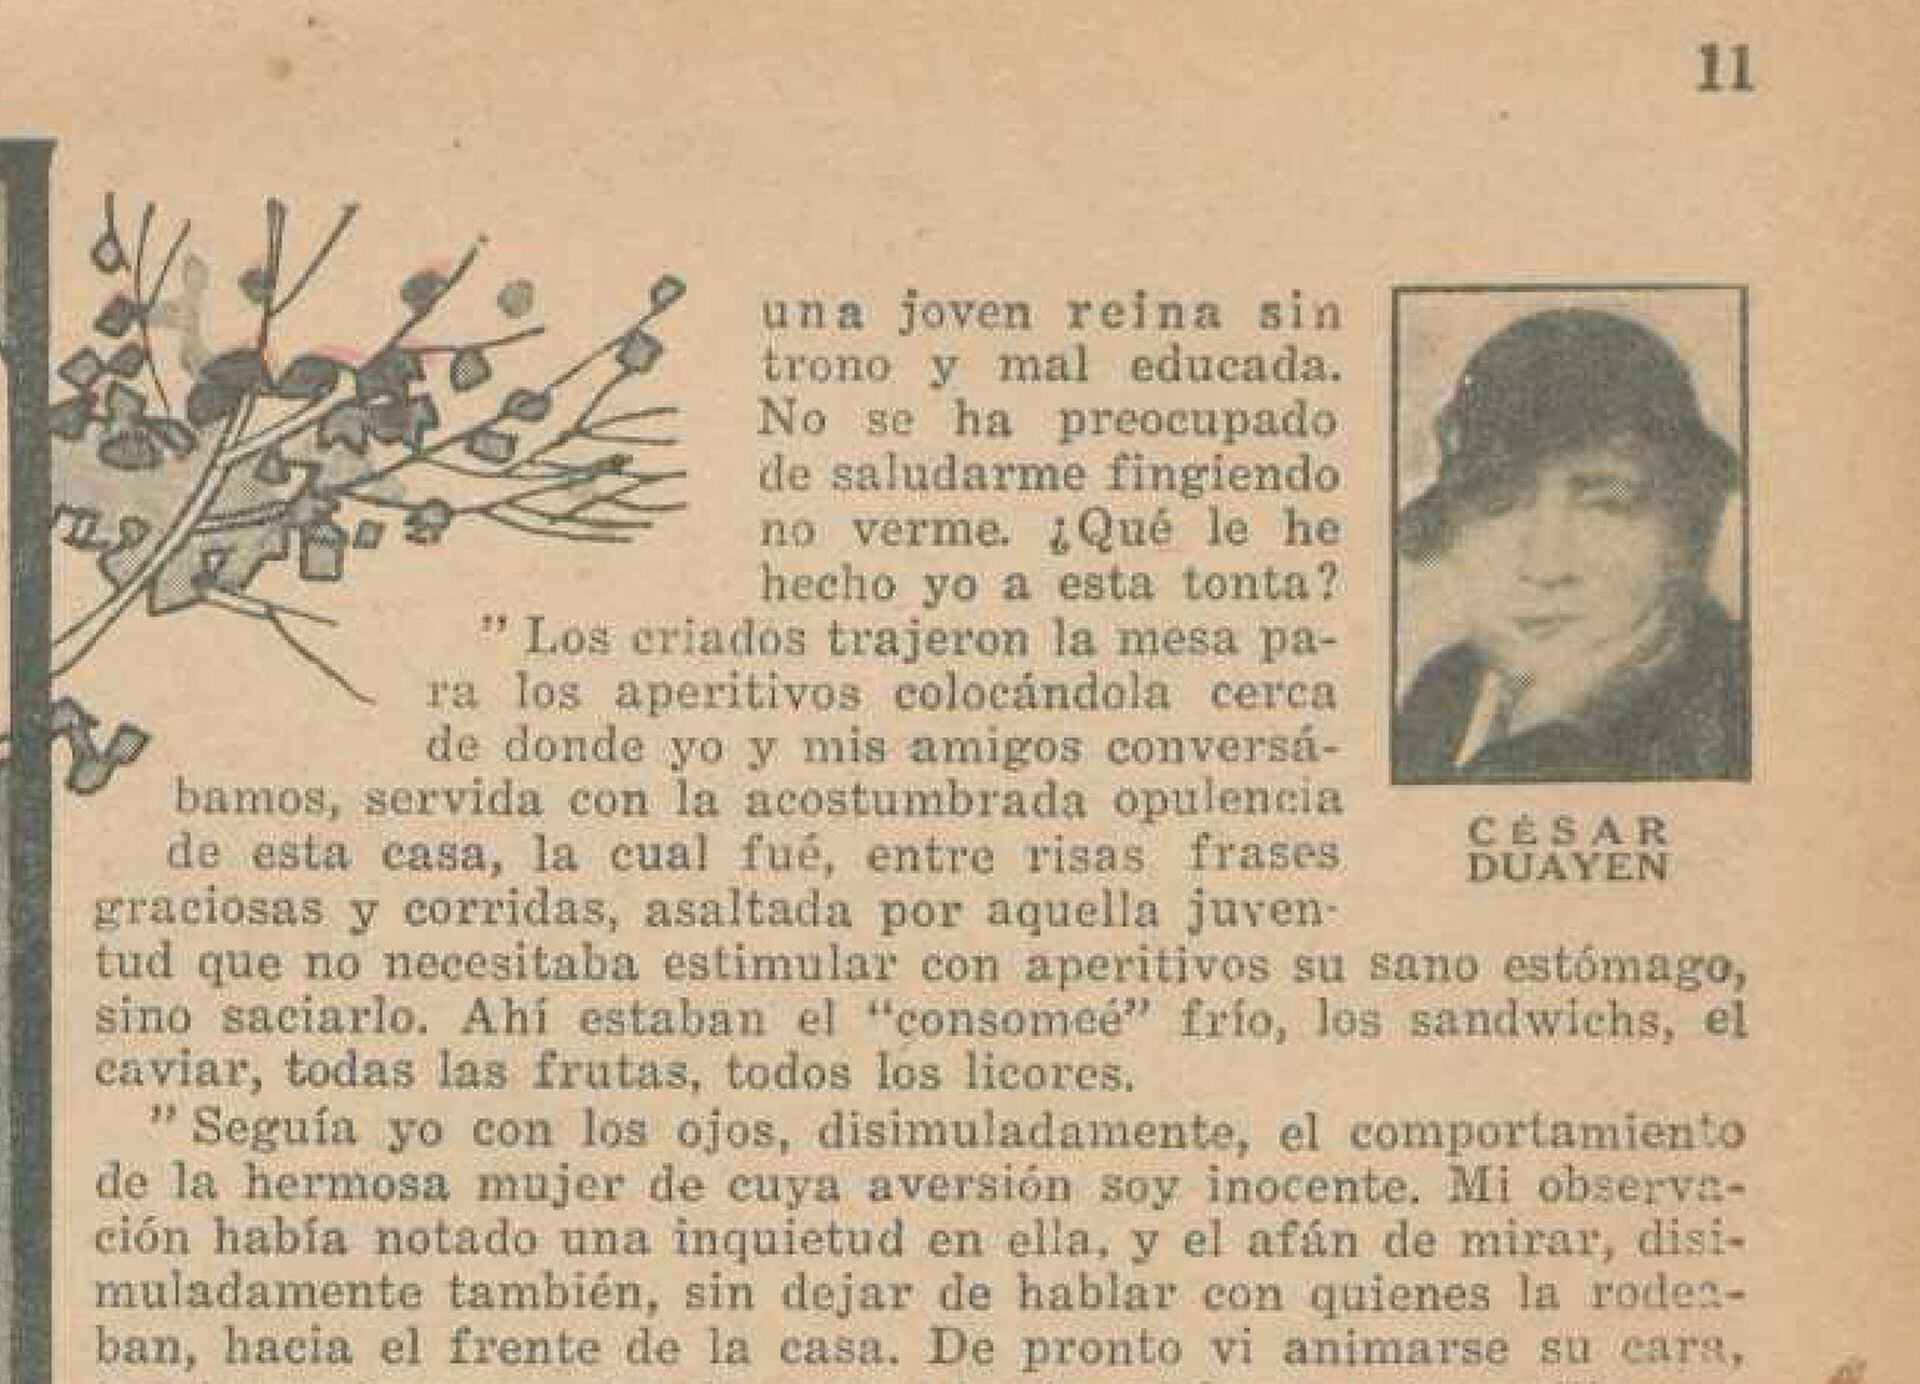 La novela Eleonora fue publicada por entregas en la revista El Hogar. Emma de la Barra seguía firmando como César Duayen.